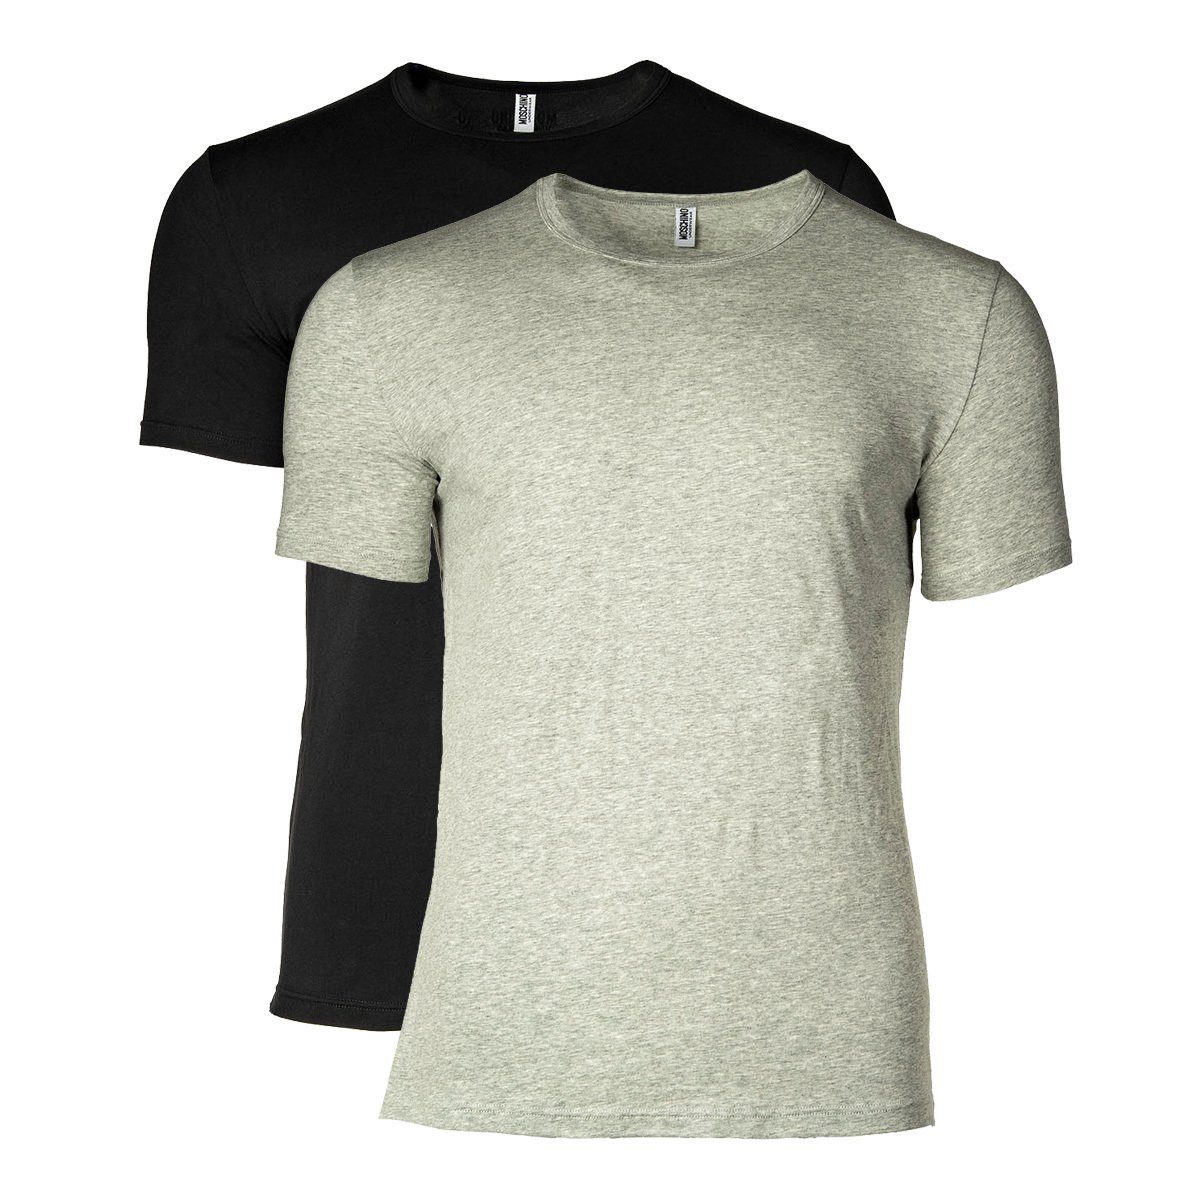 Moschino T-Shirt Herren T-Shirt 2er Pack - Crew Neck, Rundhals Schwarz/Grau